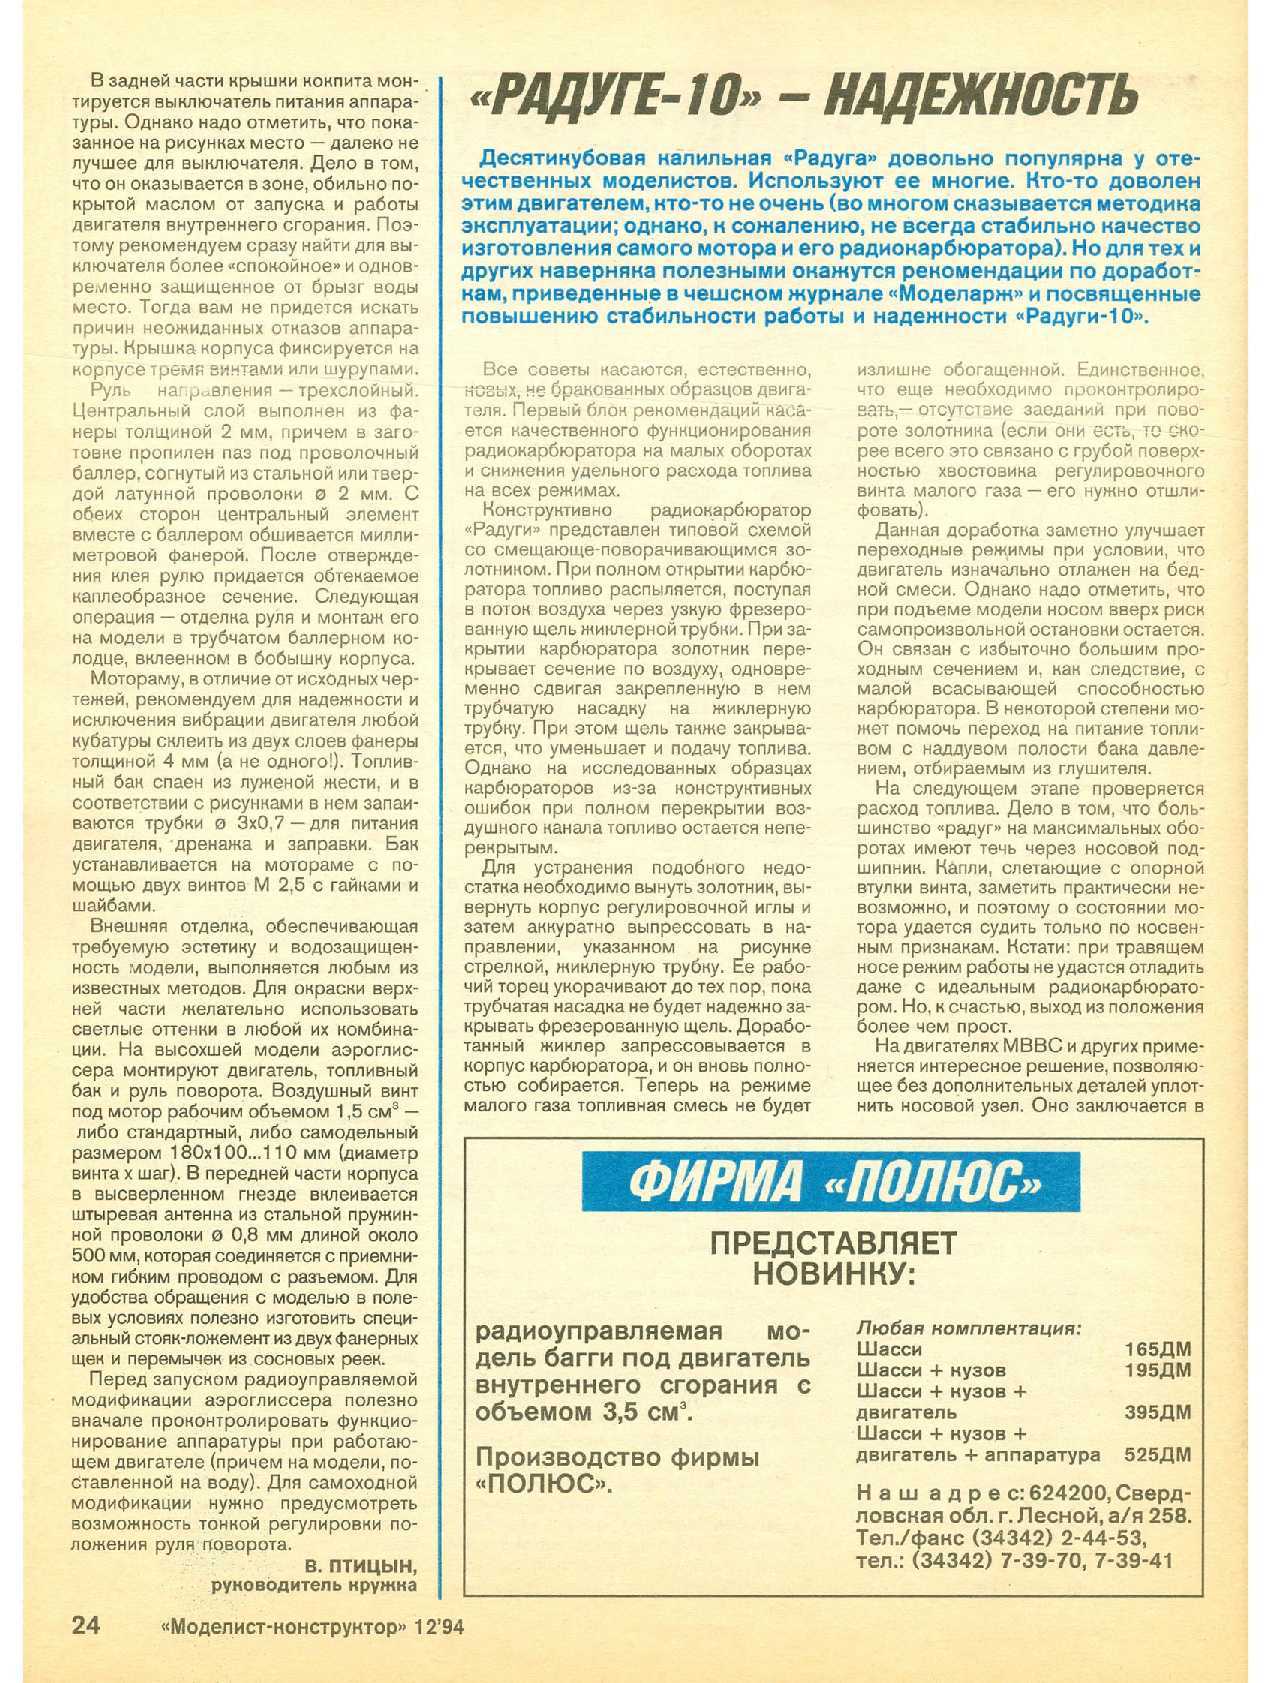 МК 12, 1994, 24 c.